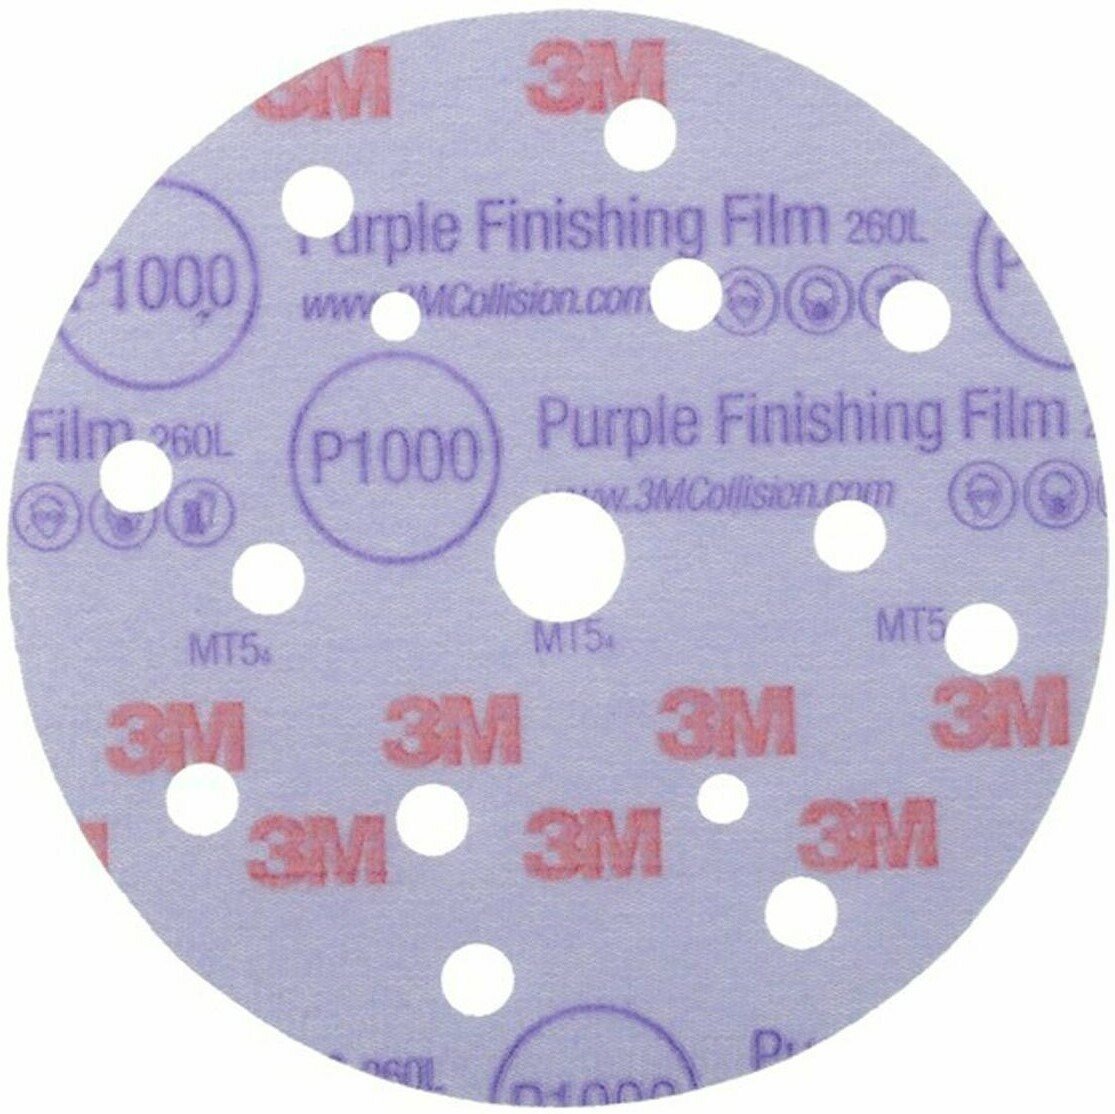 Абразивный шлифовальный круг ( наждачка ) 3M™ Hookit™ Purple P1000, 150 мм, с мультипылеотводом | 51157 серии 260L, 1 шт.